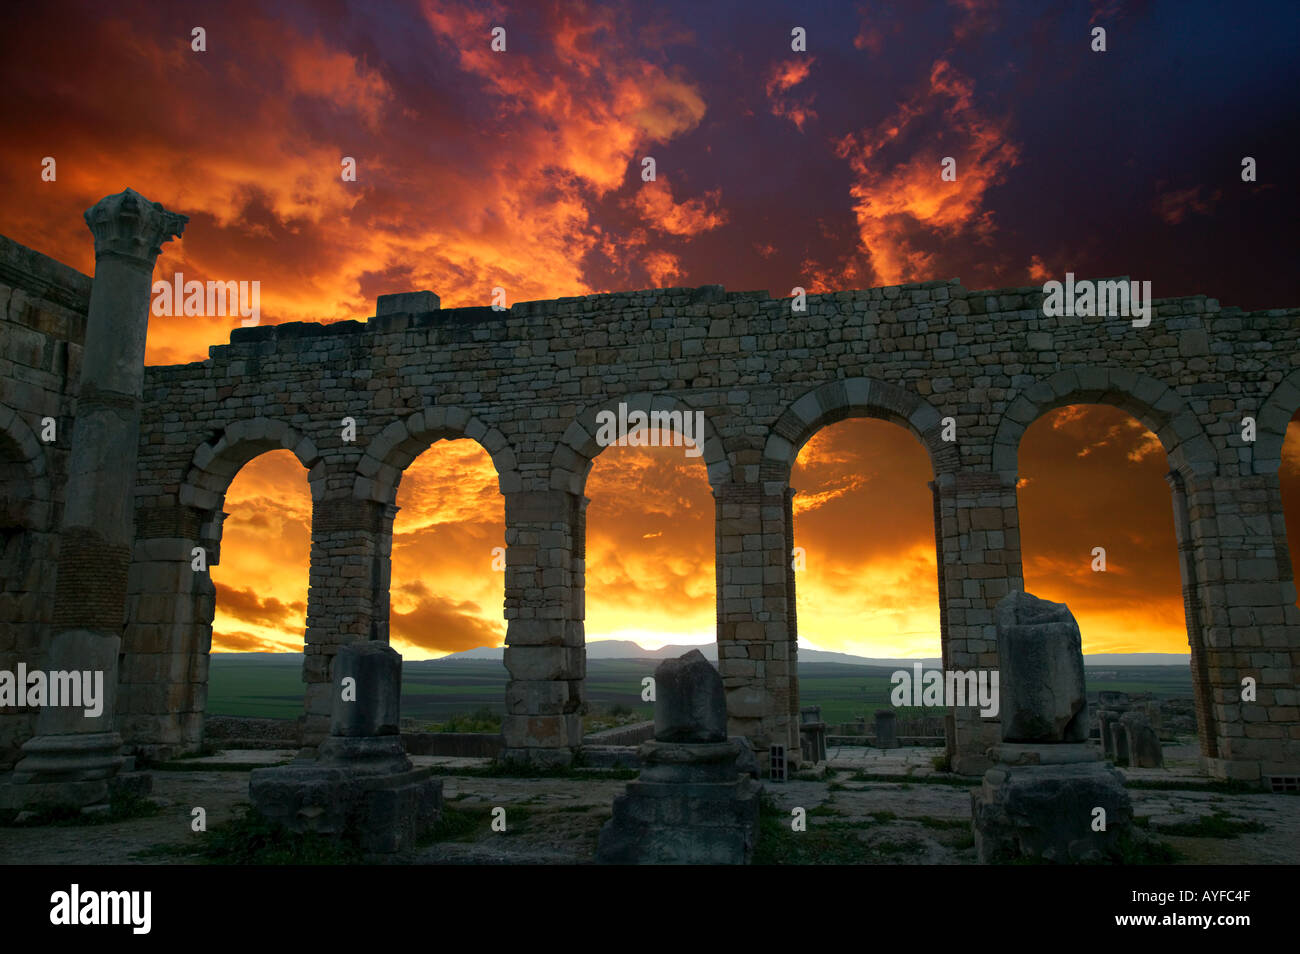 Les ruines romaines de Volubilis date du 2e et 3e siècles les silhouettes au coucher du soleil de la basilique d'arcades - Maroc Banque D'Images